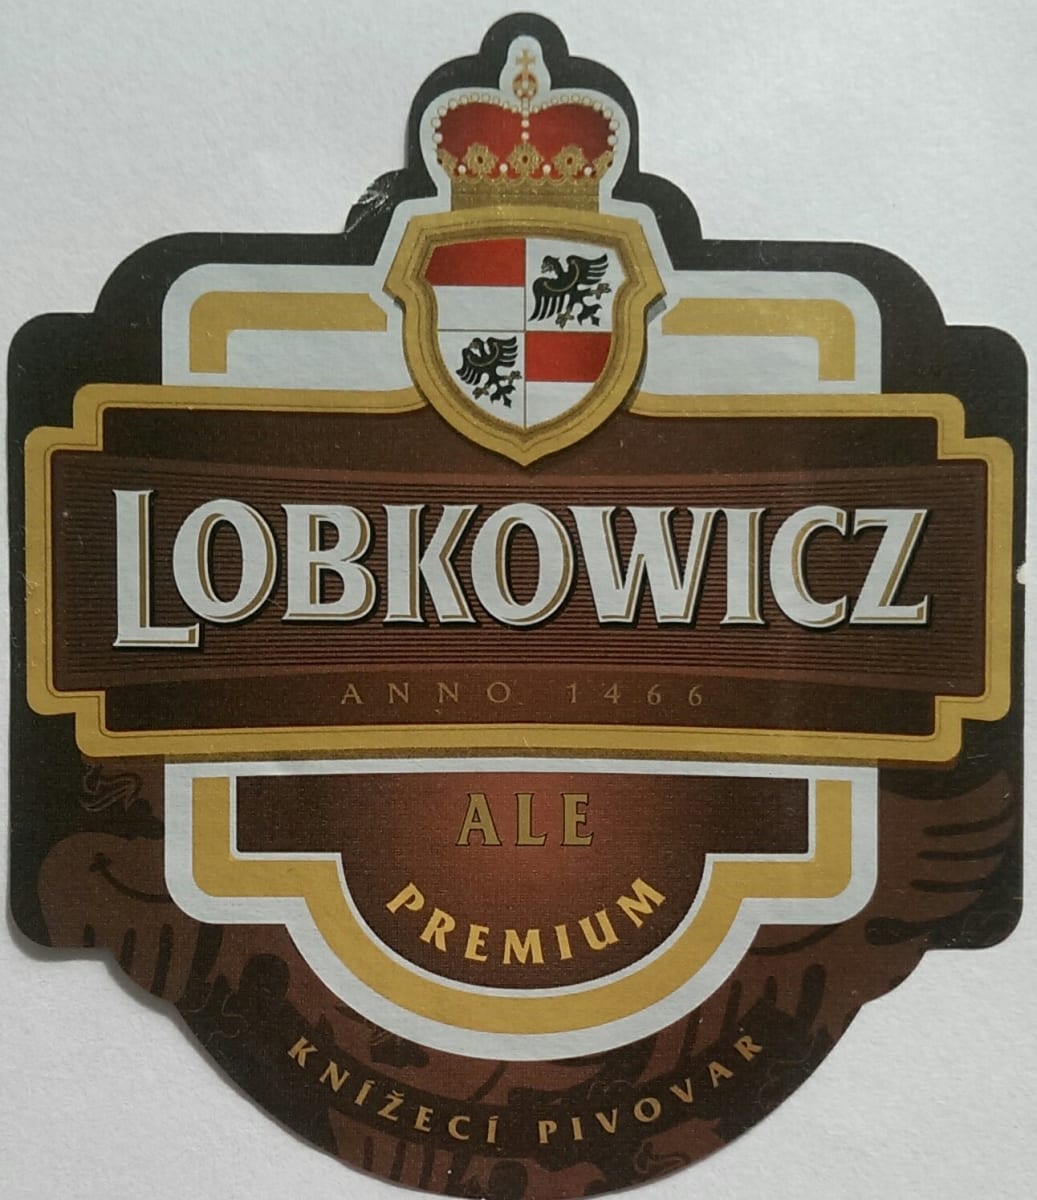 Lobkowicz Ale Premium